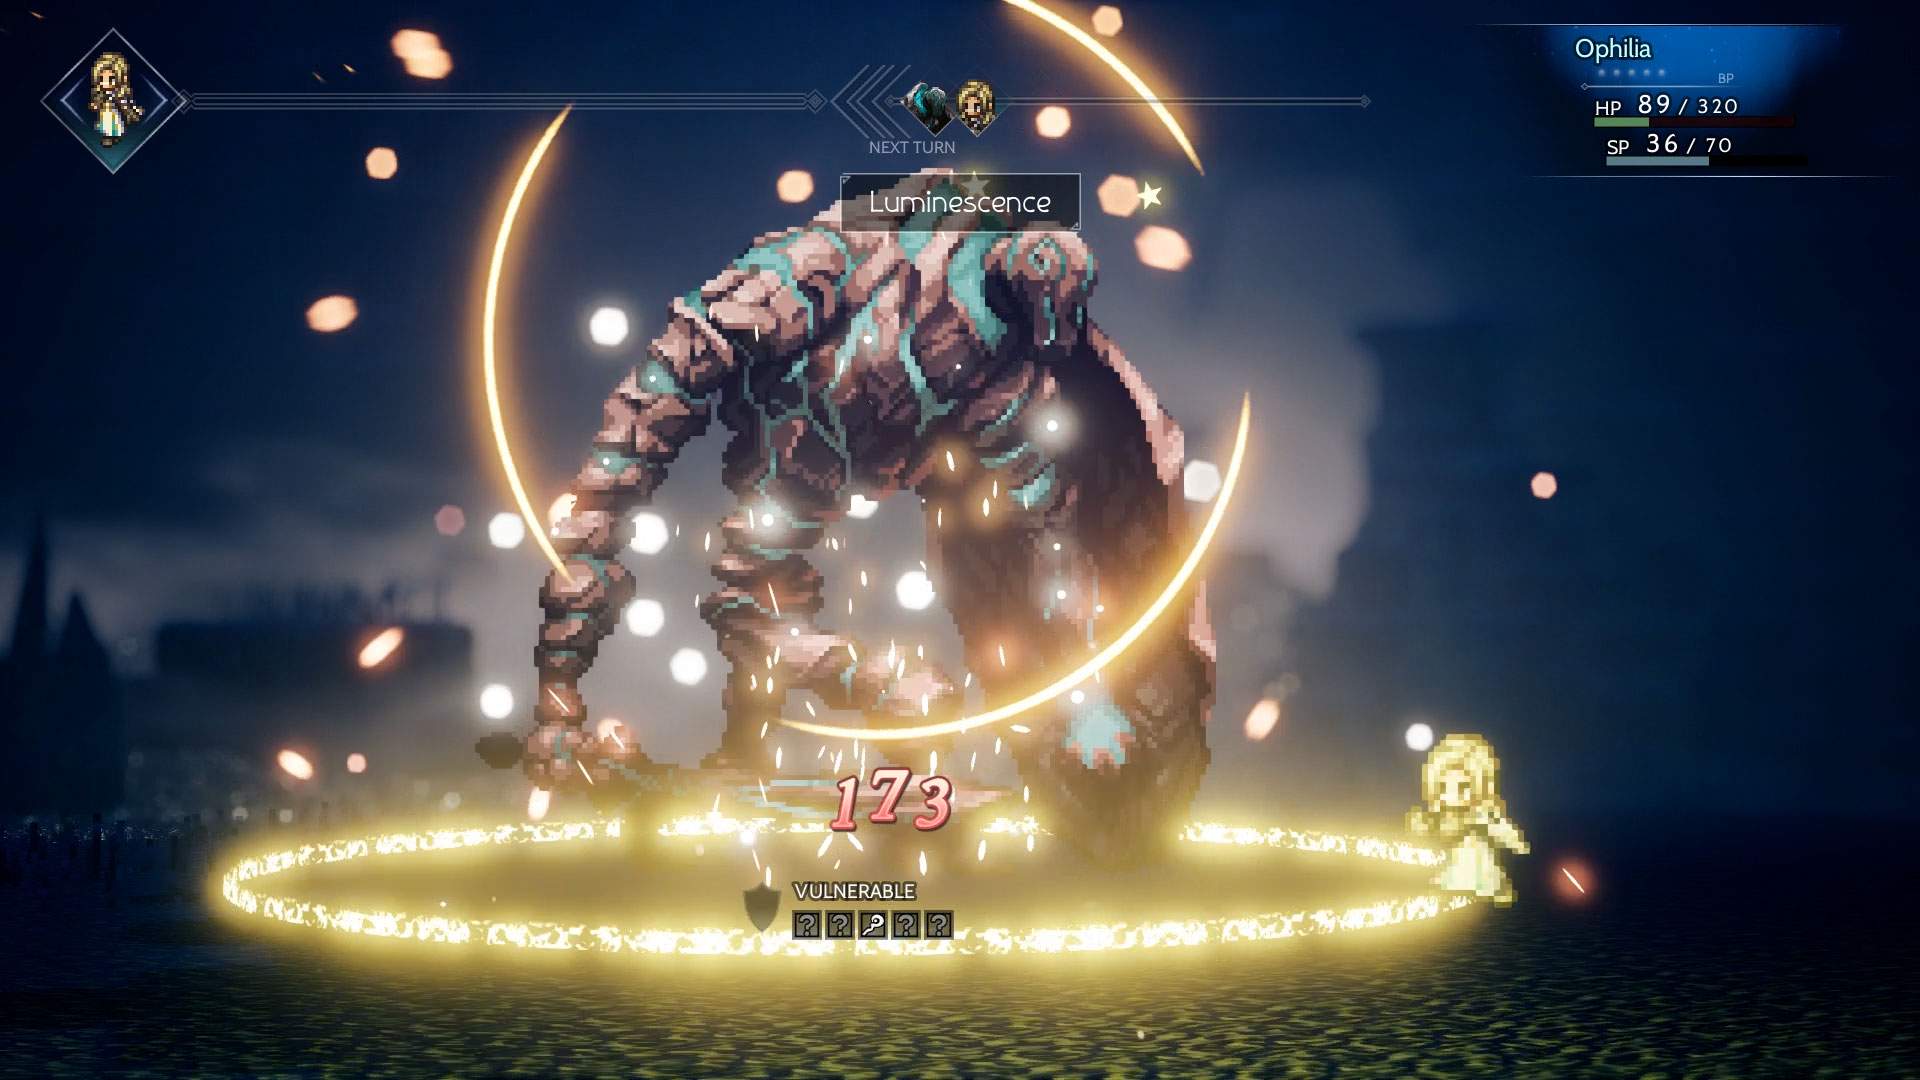 Capture d'écran d'un combat au cours duquel Ophilia lance une attaque sur un monstre imposant dans un lieu sombre.